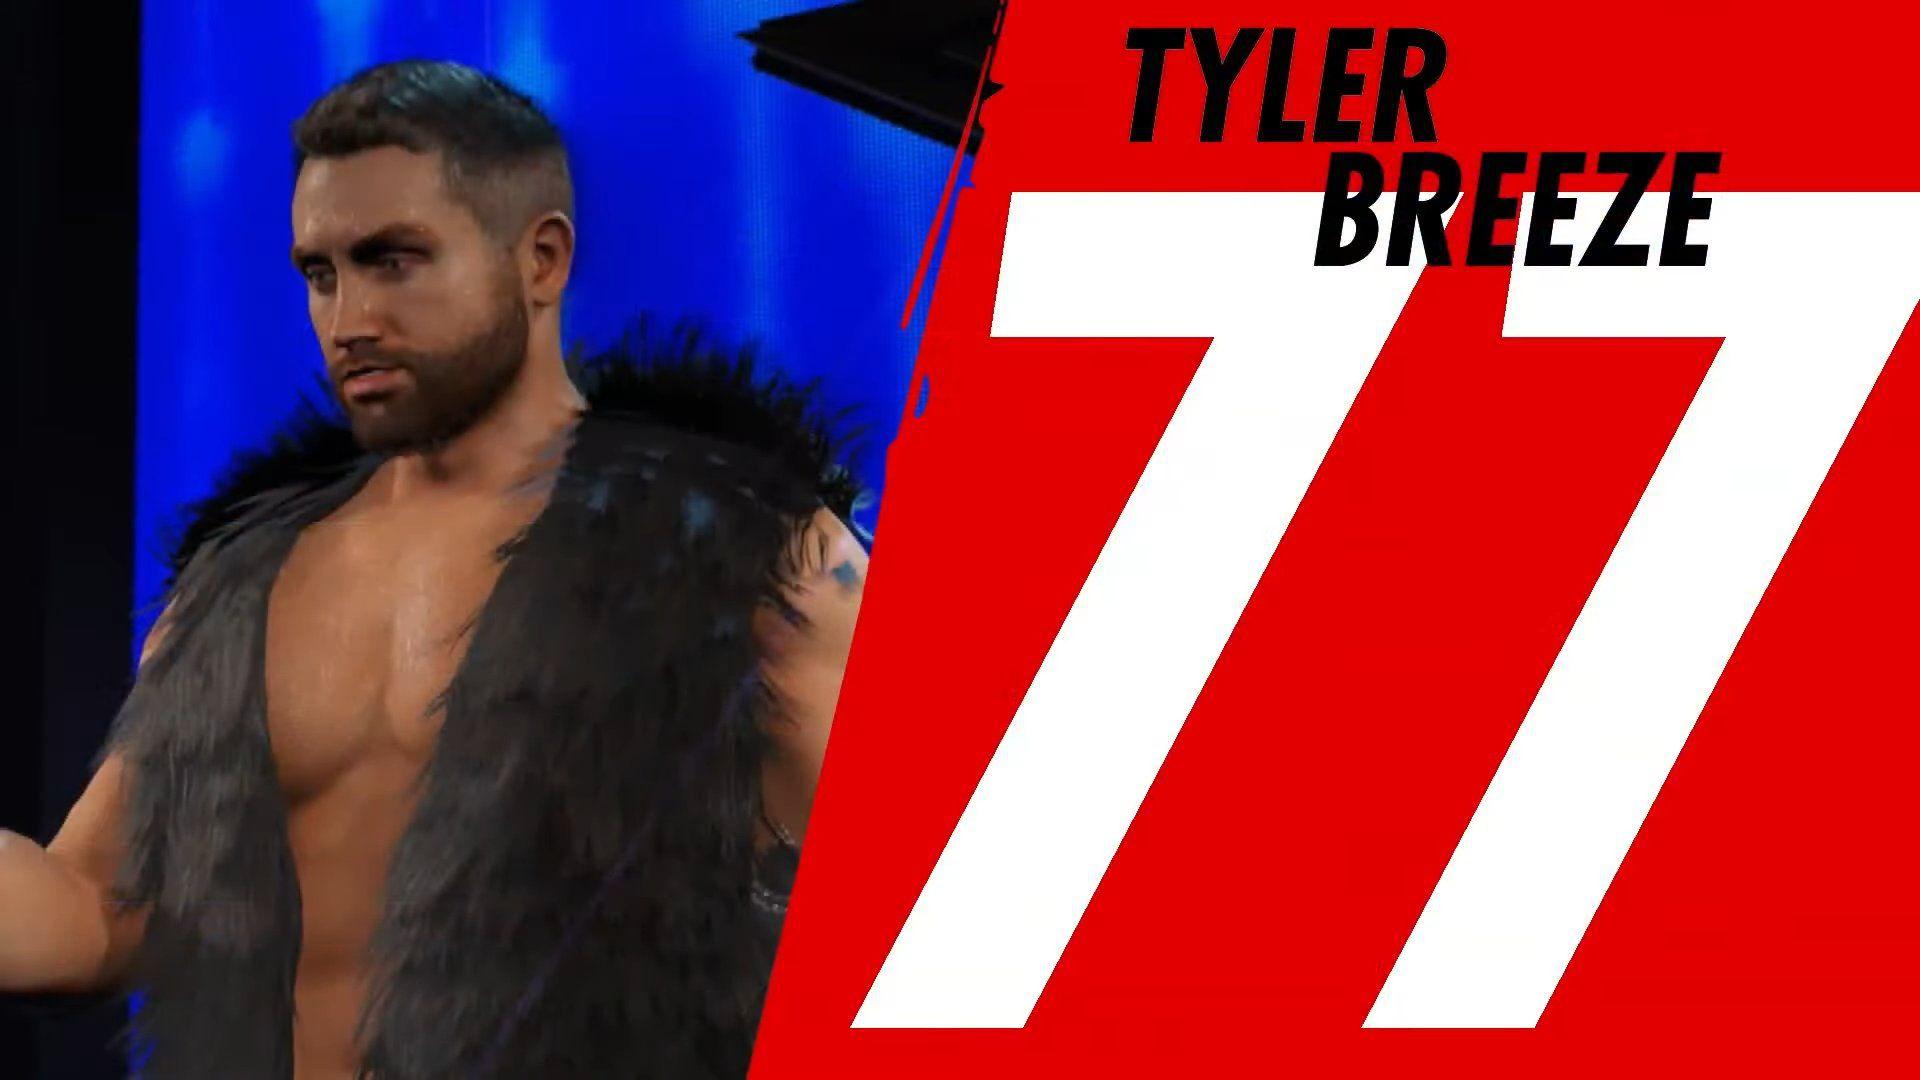 WWE 2K23 adiciona outro personagem não anunciado à lista